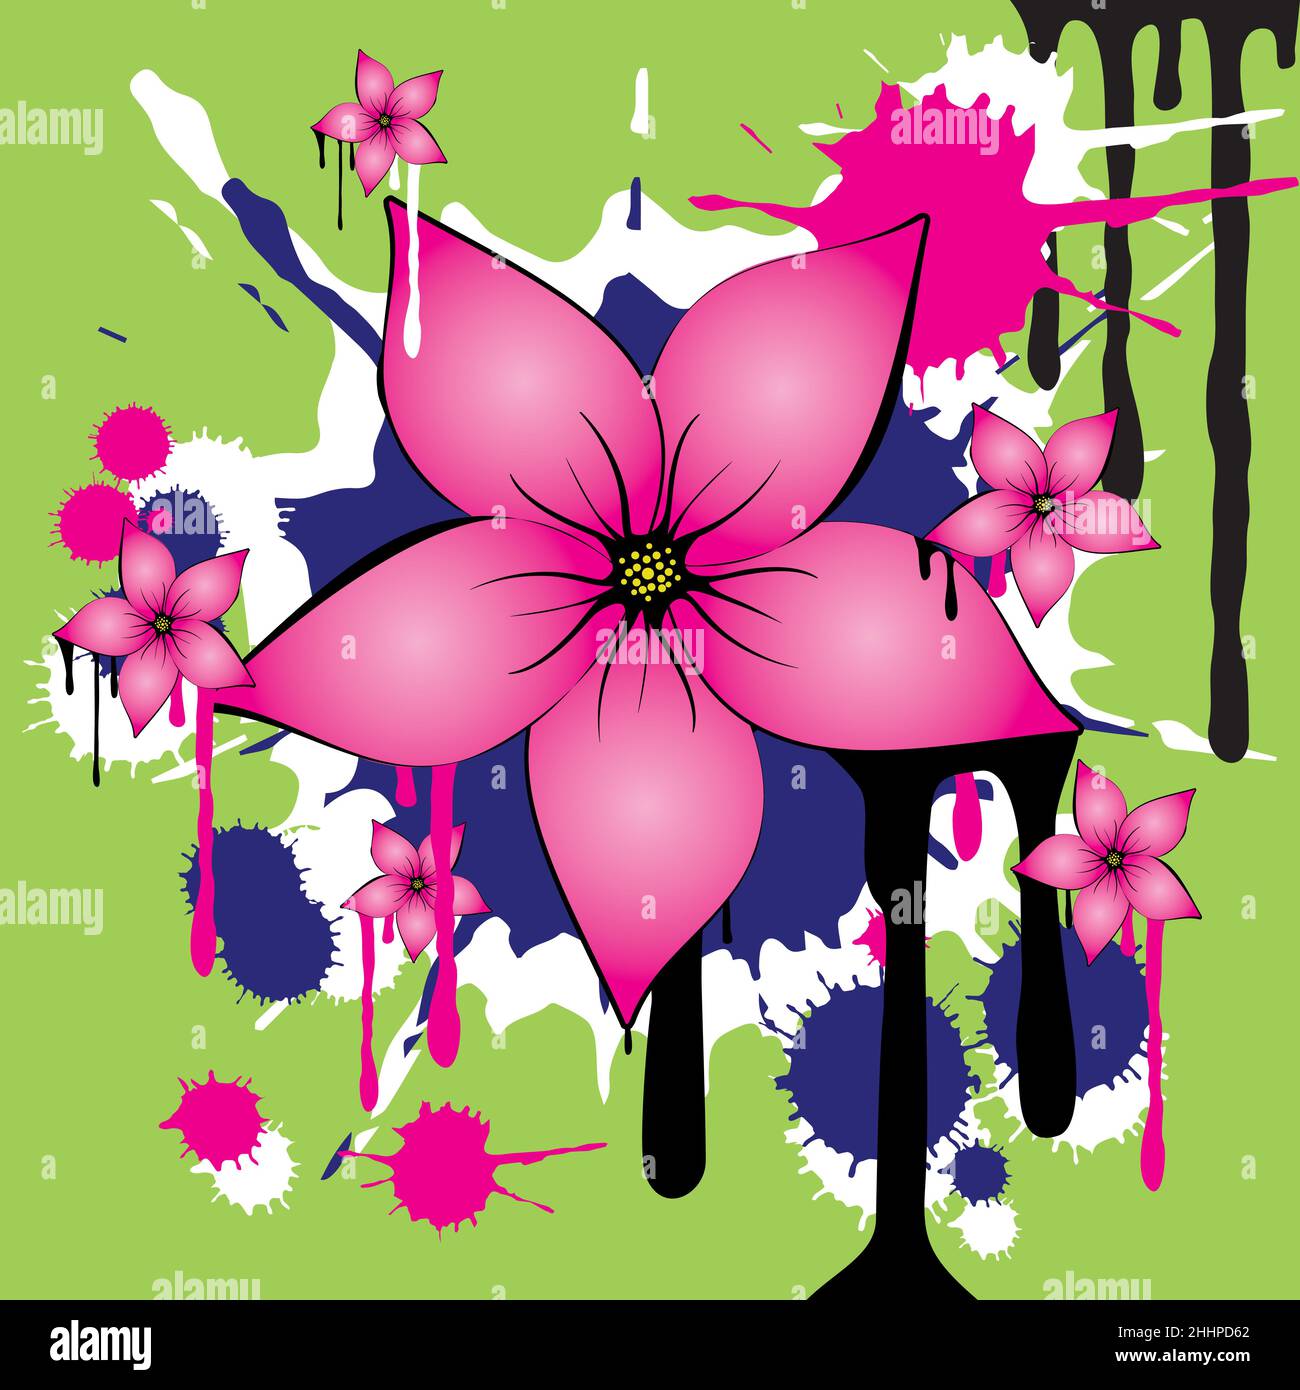 Una grunge decorativa e graffiti floreali nel mezzo è un grande fiore rosa con cinque petali. Nella parte posteriore sono gocciolamenti e macchie di inchiostro. Illustrazione Vettoriale